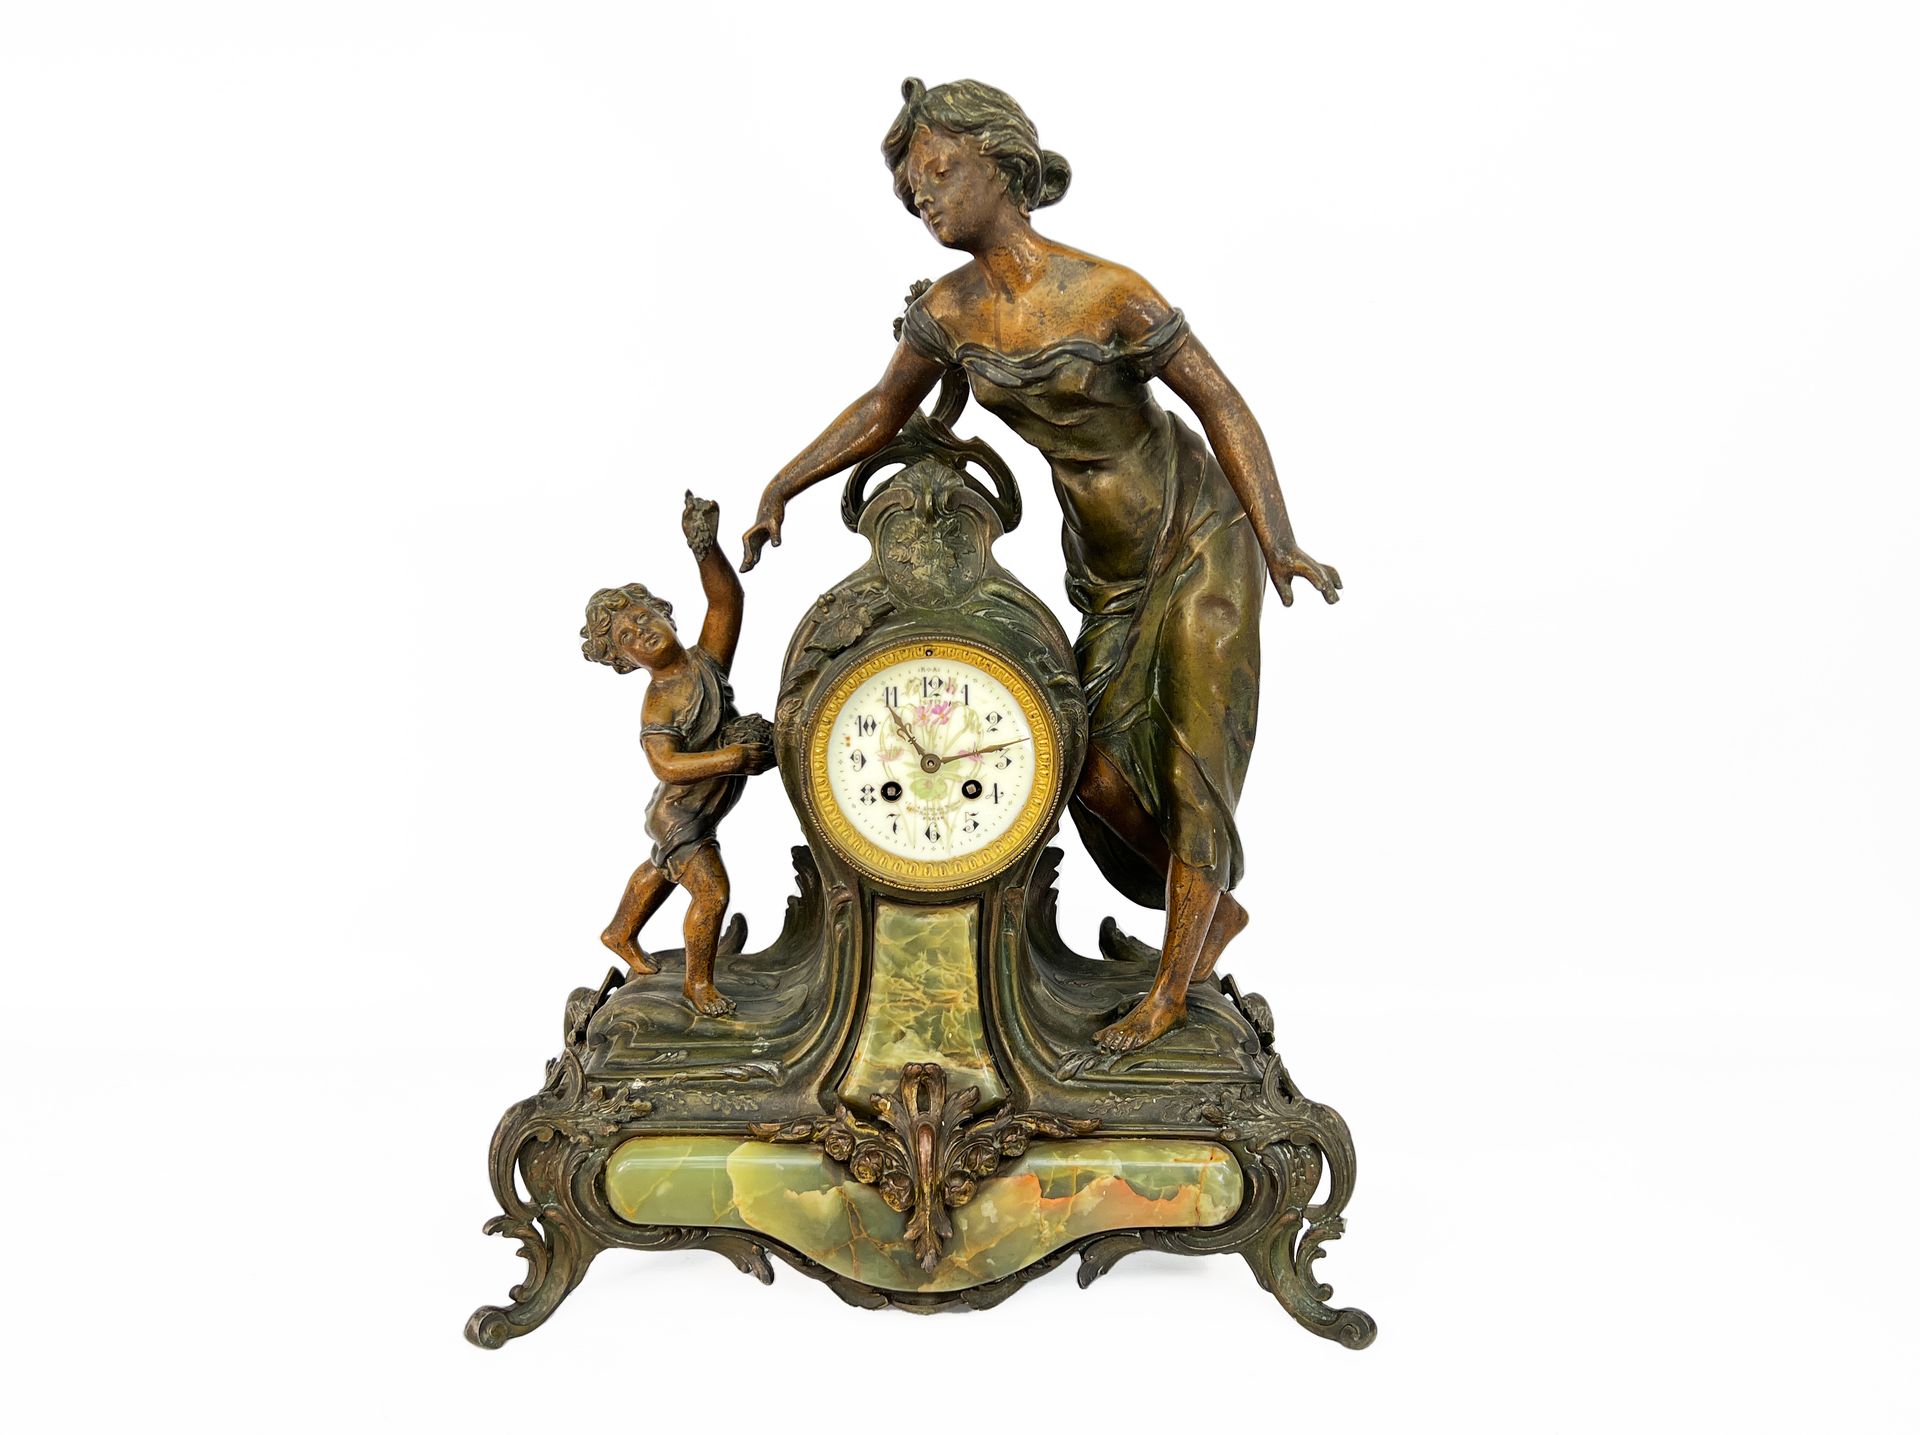 Null 20世纪初的作品

钟表的主题是一个优雅的女人和她的孩子。

表盘上饰有悬挂在绿色缟玛瑙元素上的花朵。

H.55厘米

长：45厘米